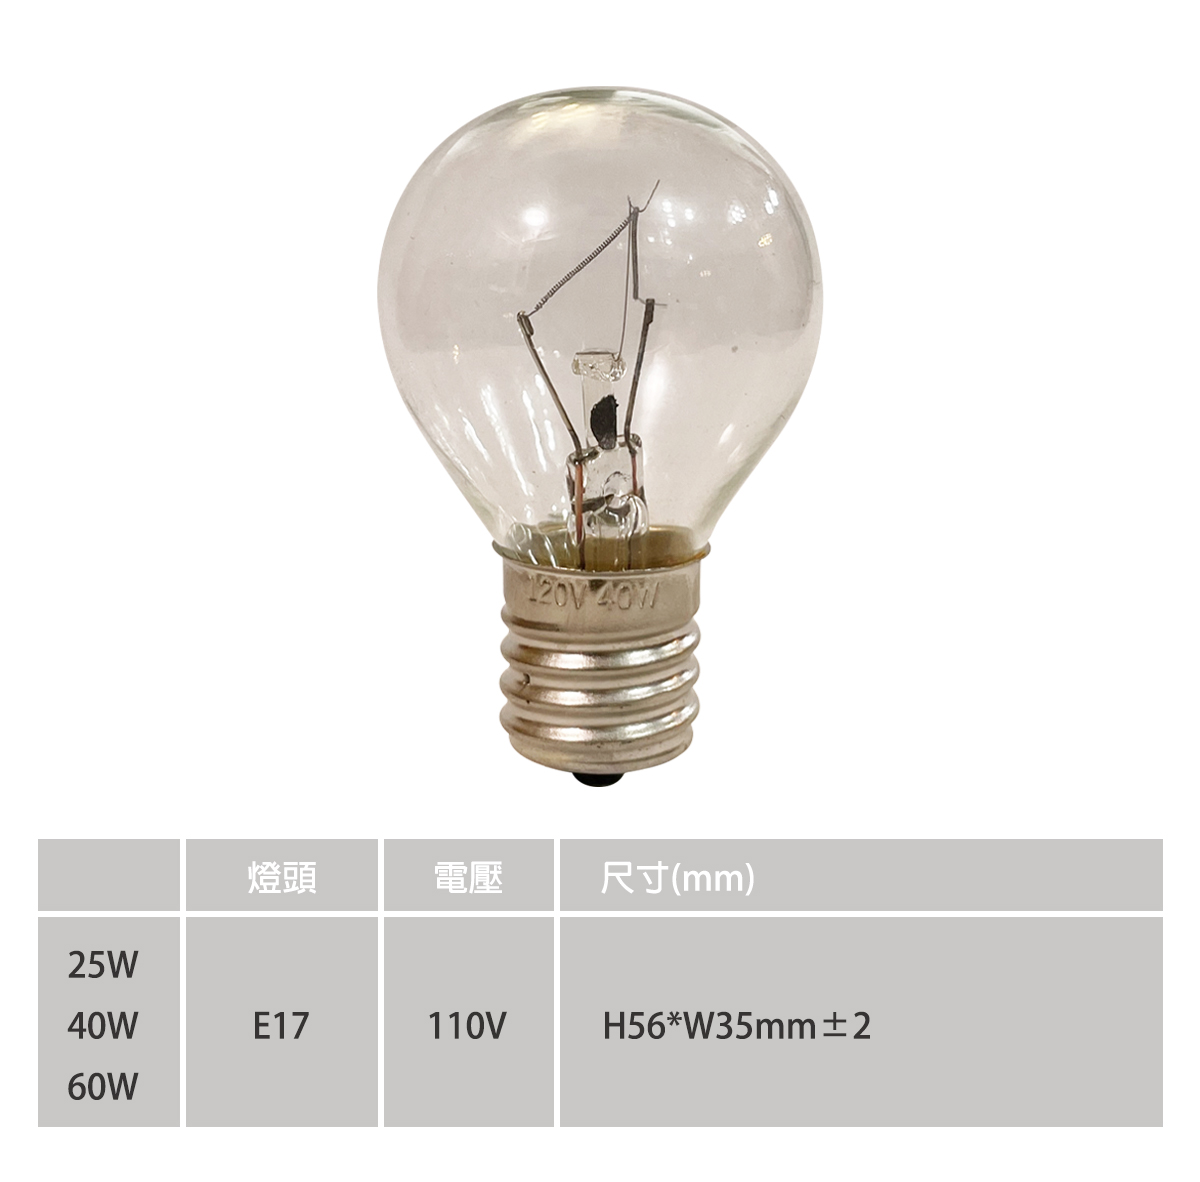 鎢絲燈泡 國民燈泡 鹽燈用 可調光 E17 25W/40W/60W 單電壓110V